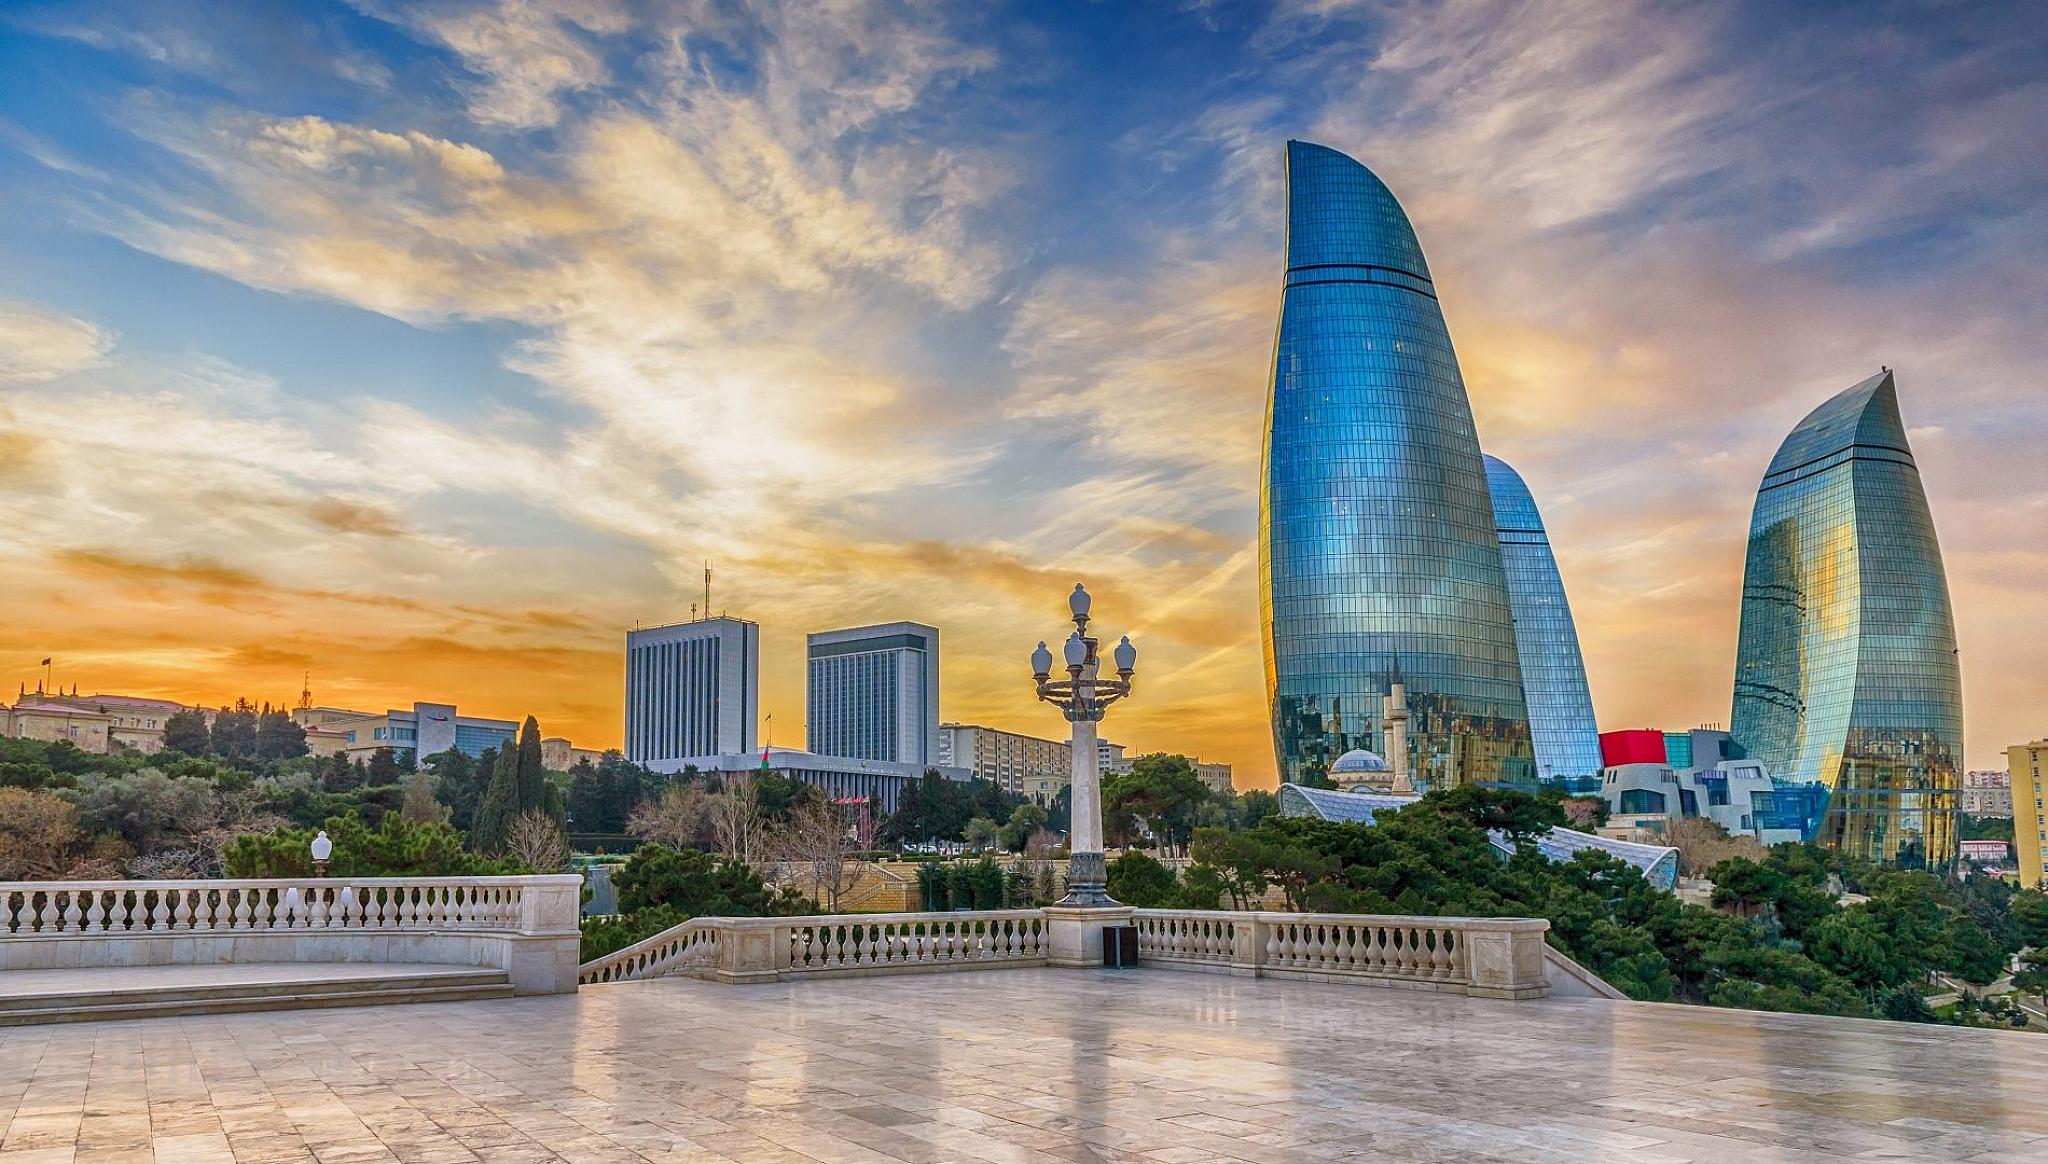 Отдых в Азербайджане